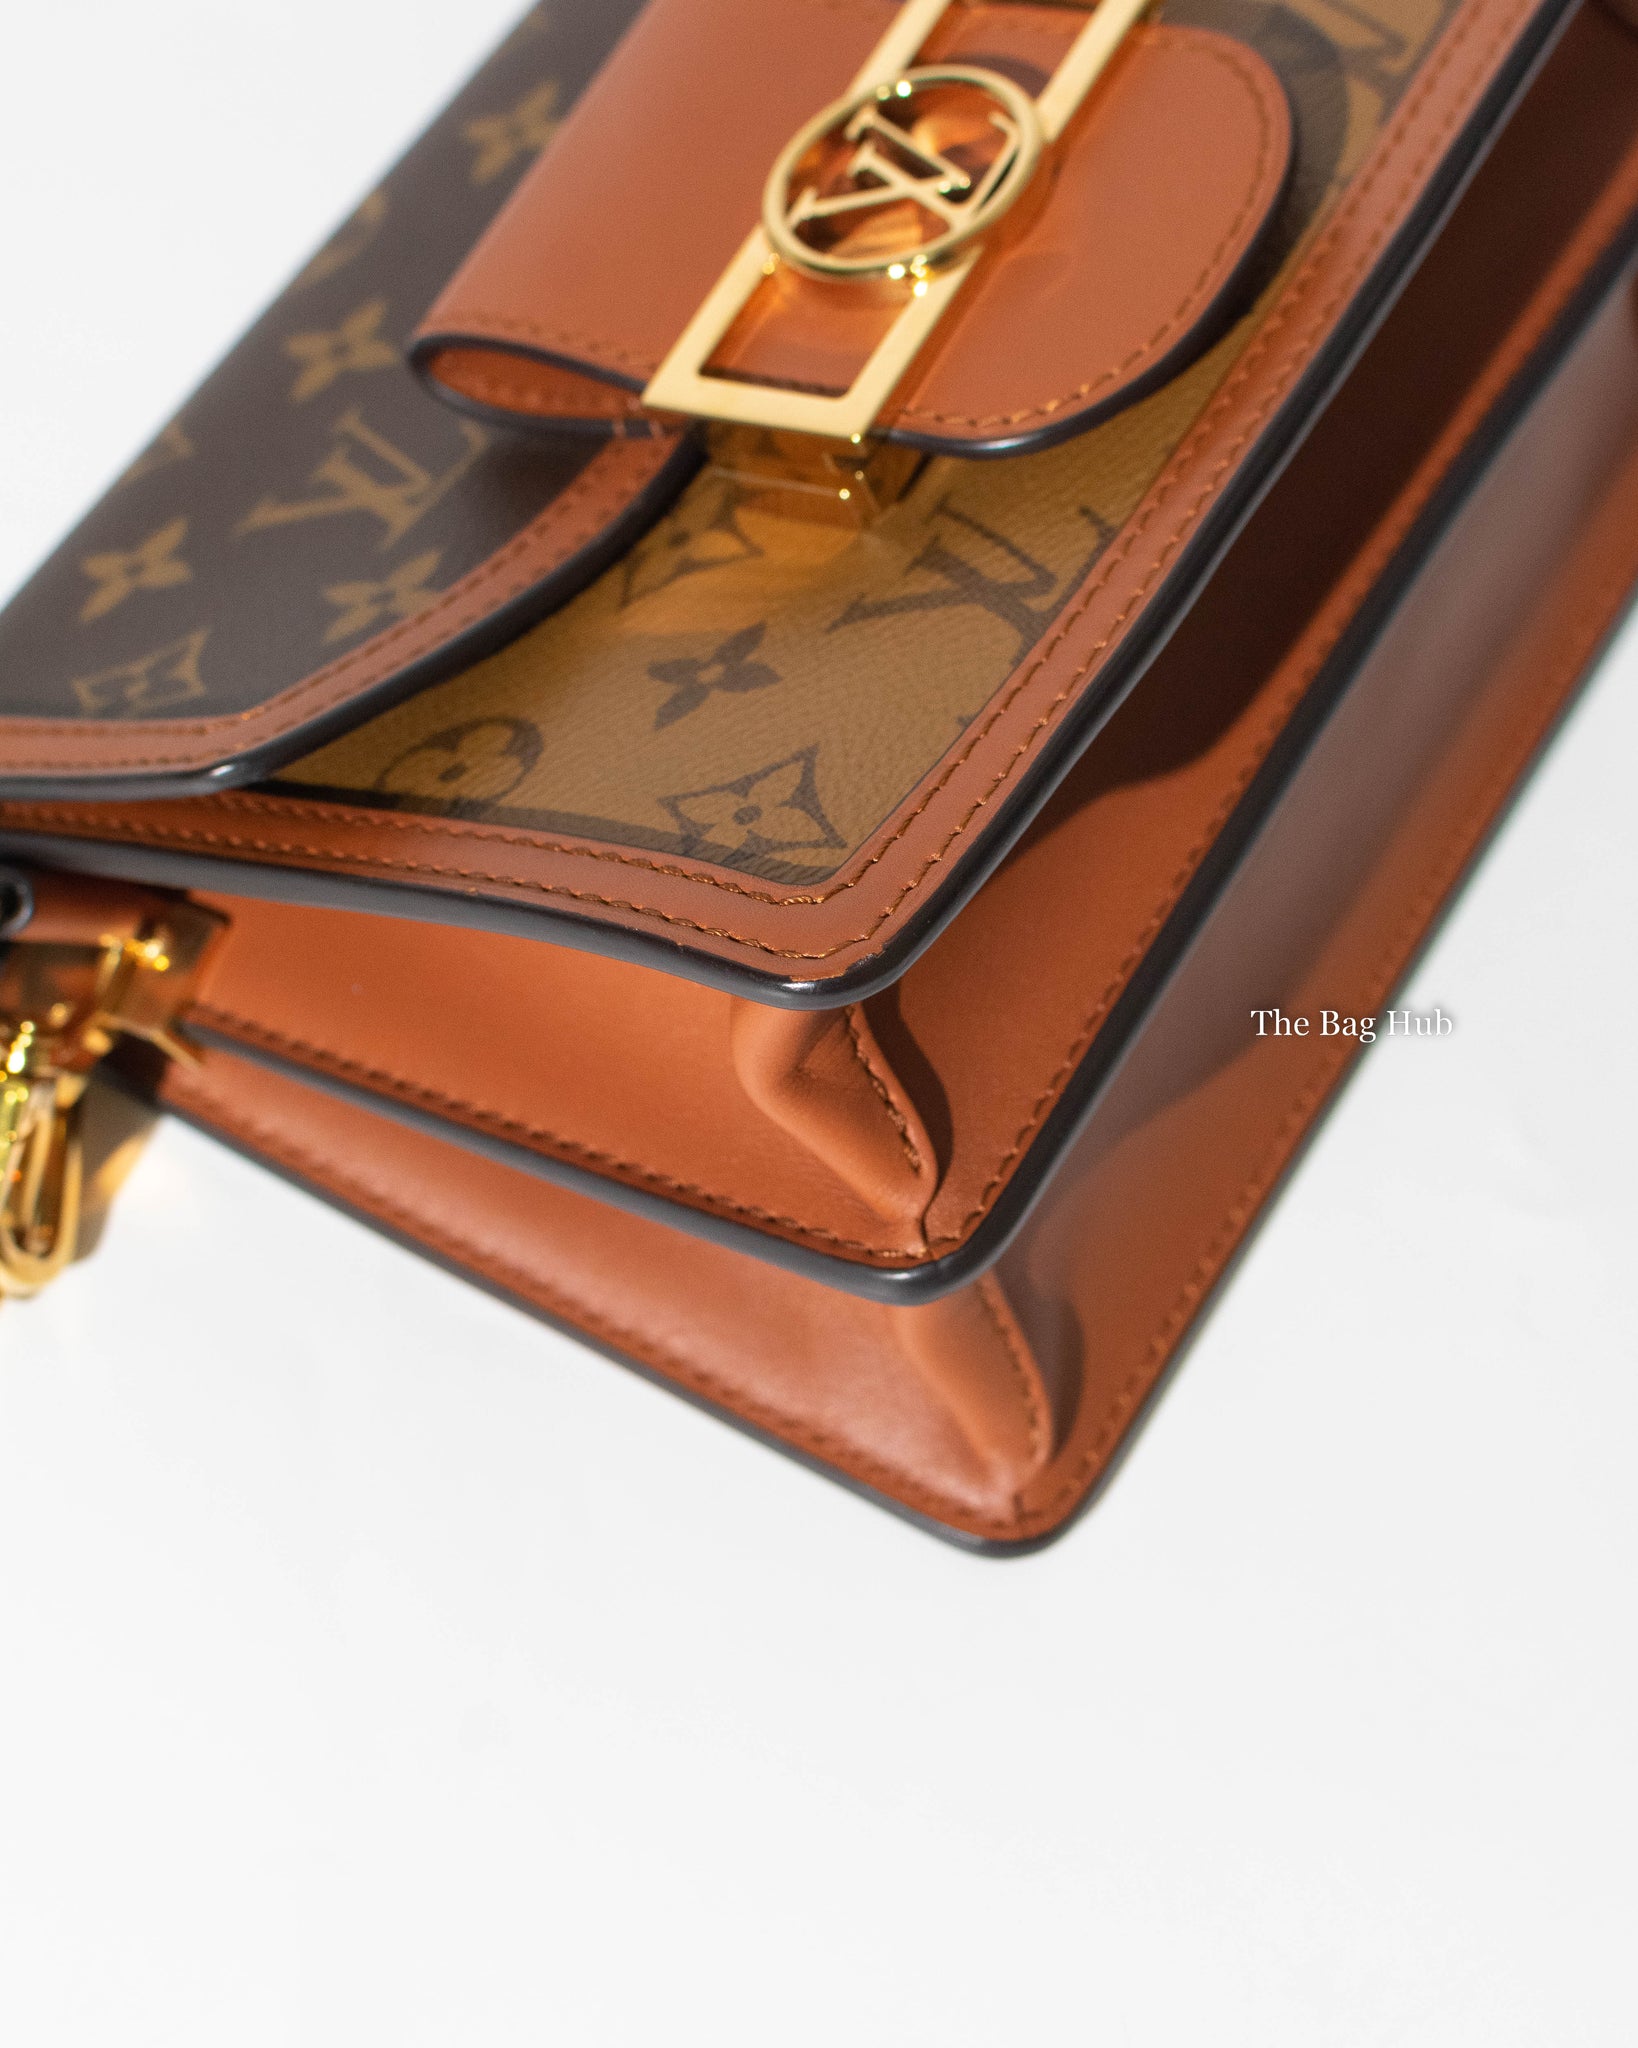 Louis Vuitton Monogram Reverse Mini Dauphine Handbag, Designer Brand, Authentic Louis Vuitton